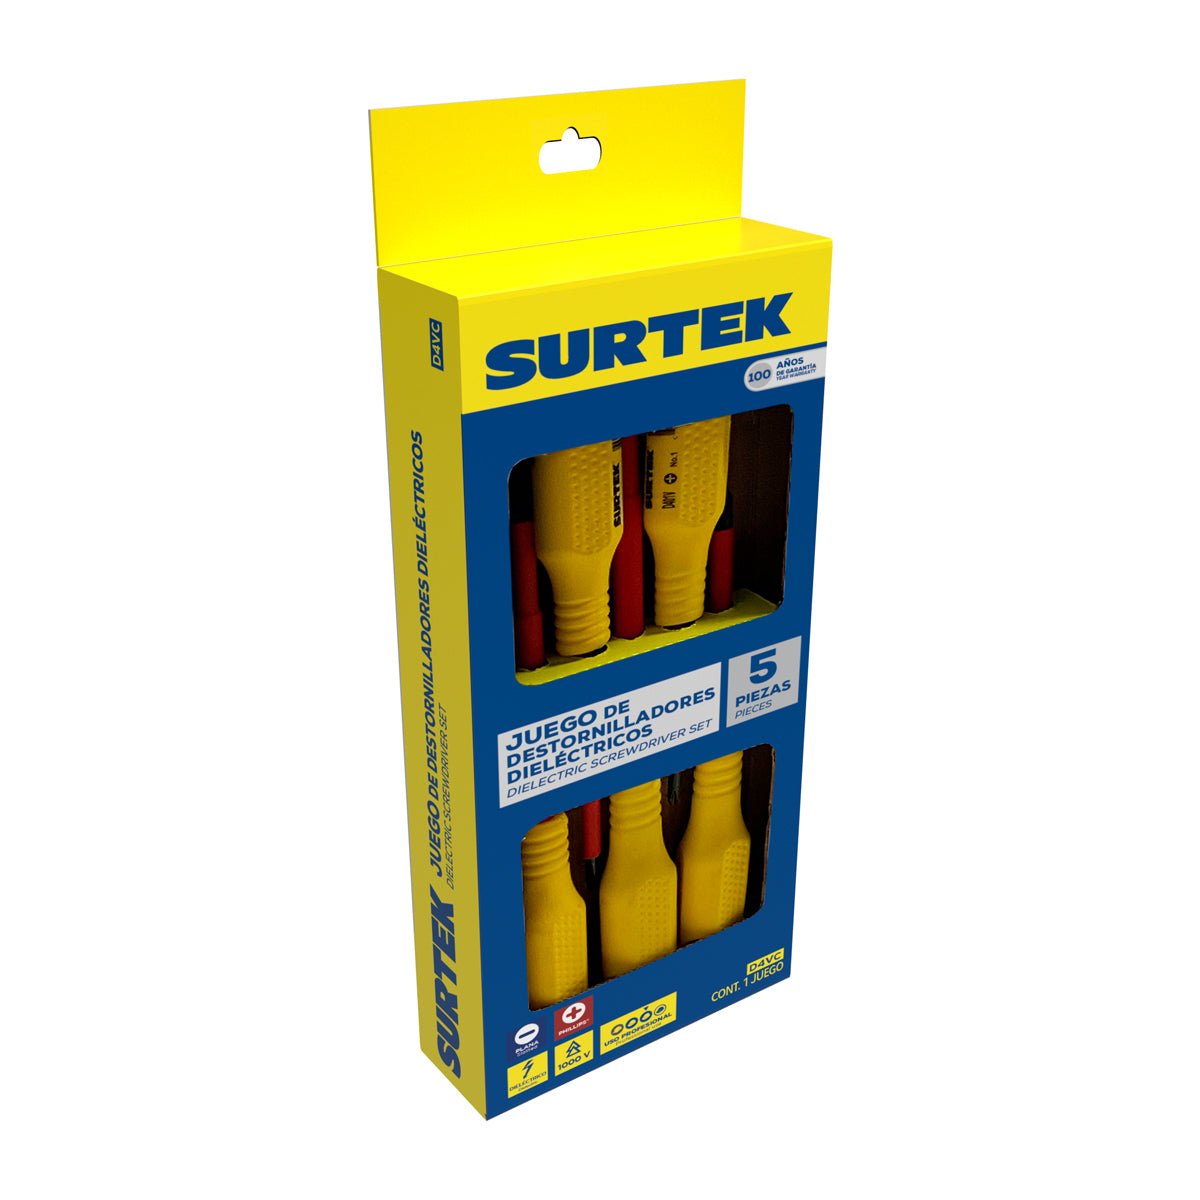 Juego de destornilladores con mango amarillo dieléctricos 1000 V combinados, 5 piezas Surtek - FERRETERÍA WITZI